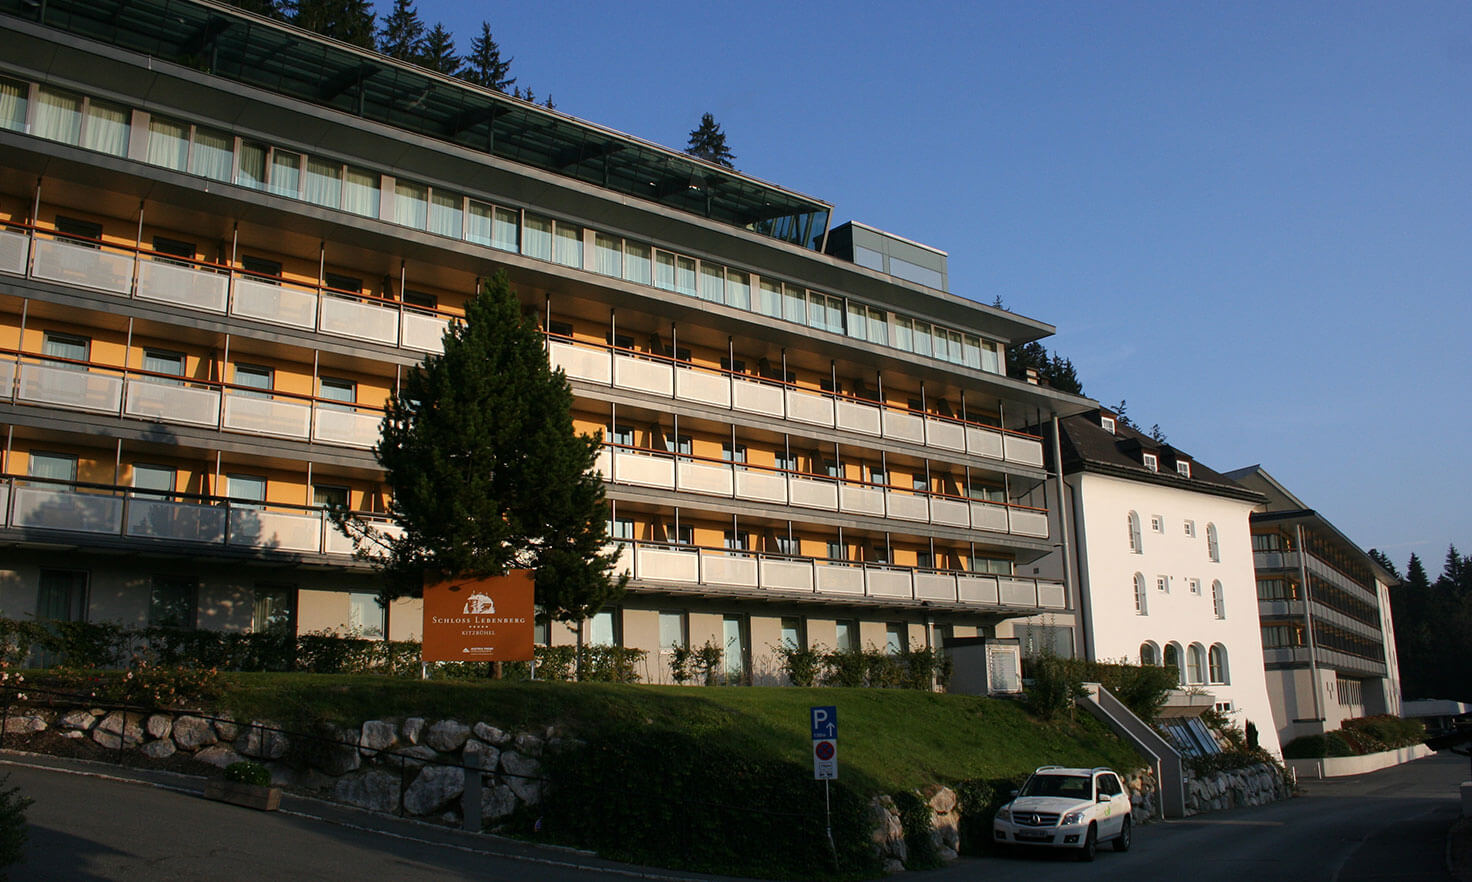 Referenzen Schlosshotel Lebenberg, Hall, Hochbau, Hotellerie, Gastgewerbebau